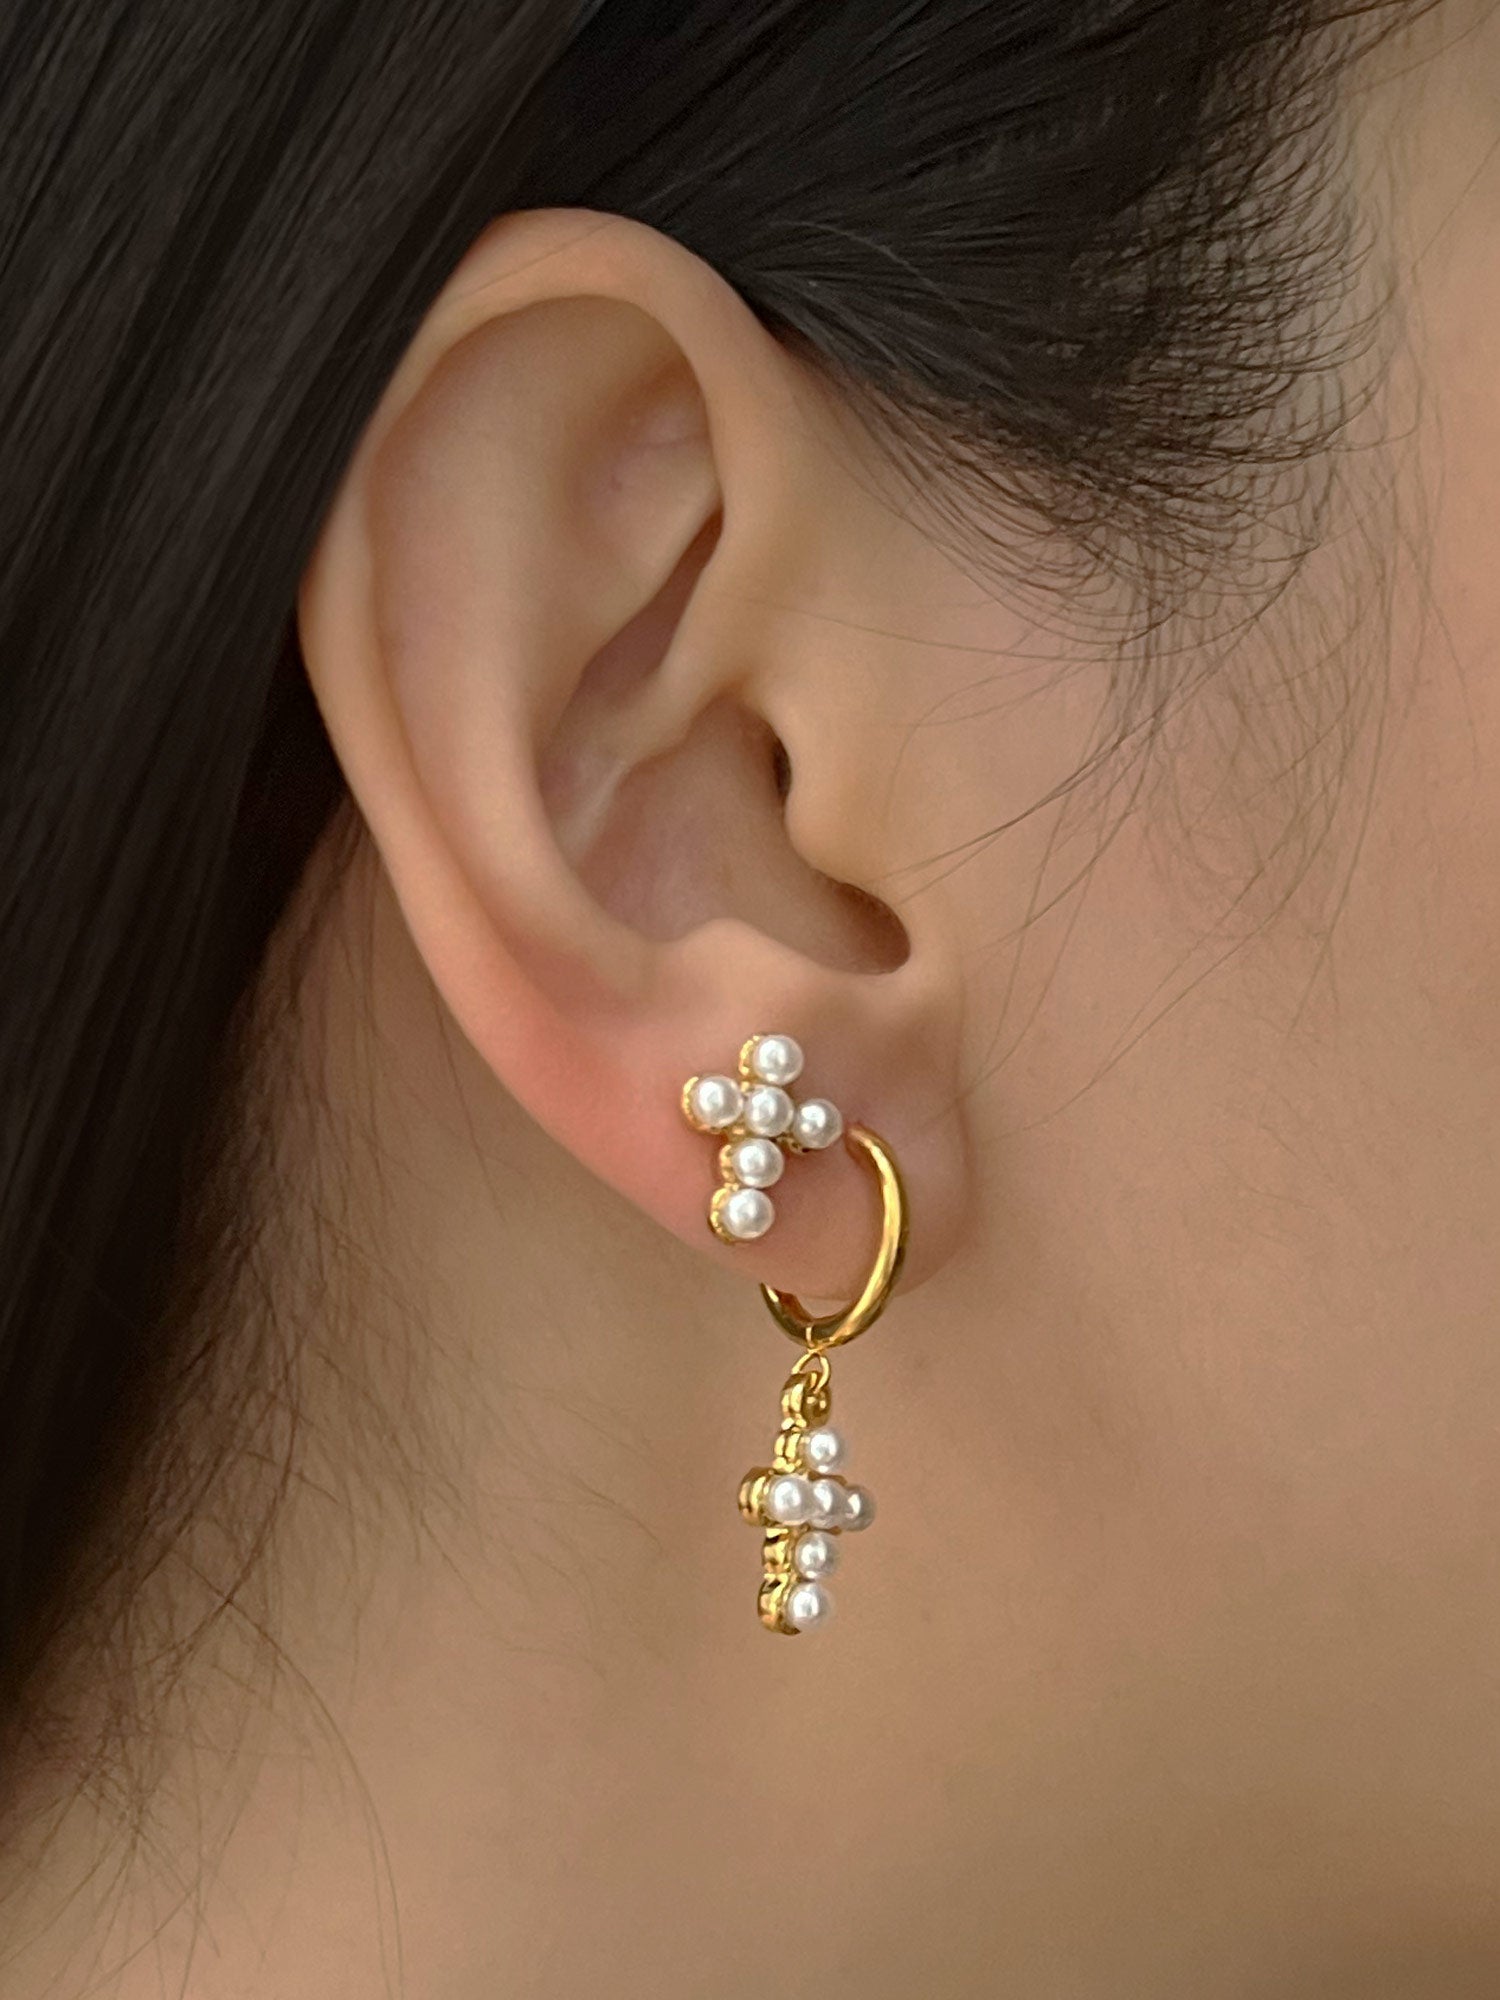 cross pearl earrings model b1de4078 3873 405d 9778 58440a0a9fd2